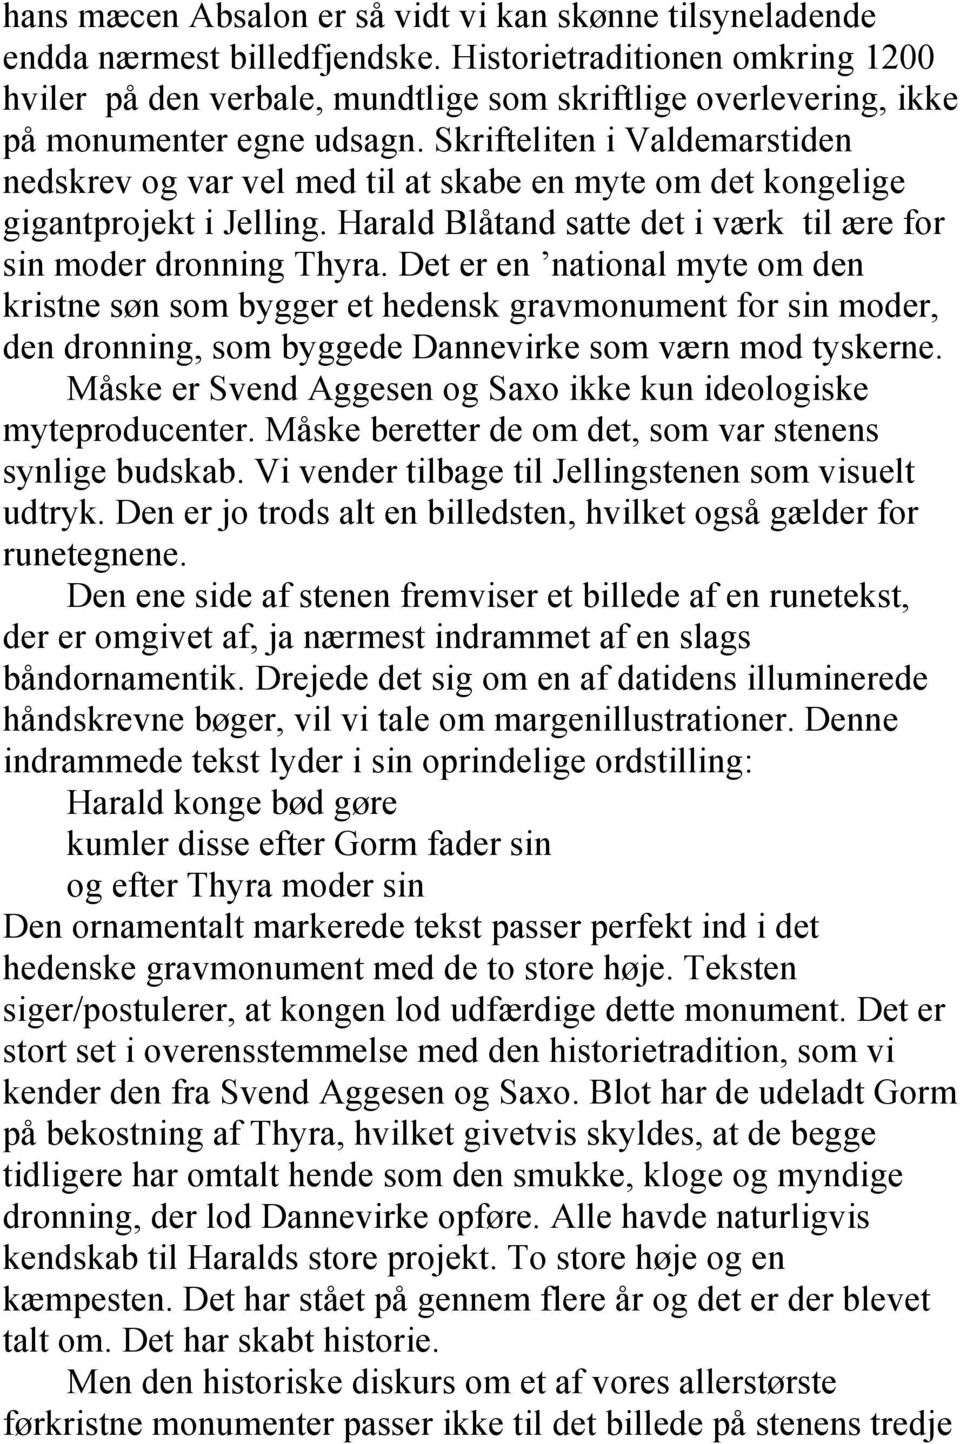 Skrifteliten i Valdemarstiden nedskrev og var vel med til at skabe en myte om det kongelige gigantprojekt i Jelling. Harald Blåtand satte det i værk til ære for sin moder dronning Thyra.